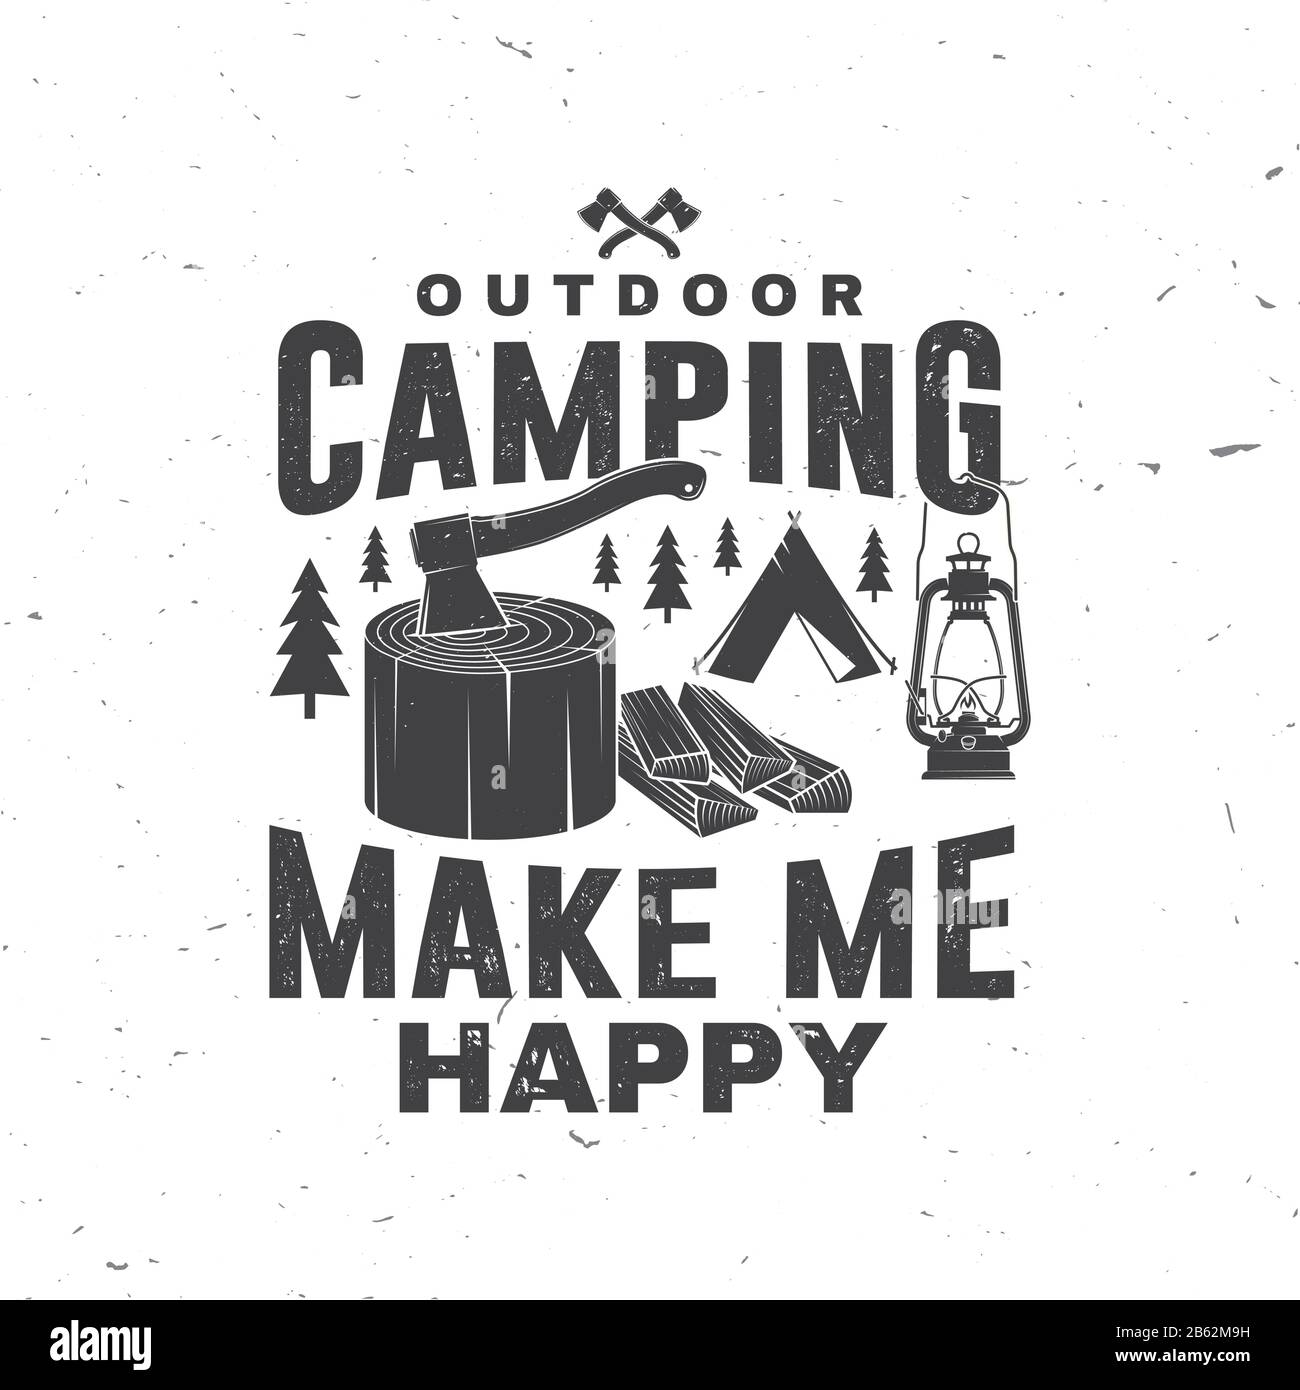 Camping im Freien macht mich glücklich. Vektorgrafiken. Konzept für Hemd oder Logo, Druck, Stempel oder T-Shirt. Vintage-Typografie-Design mit Zelt, Laterne und Axt in stumpfer Silhouette. Stock Vektor